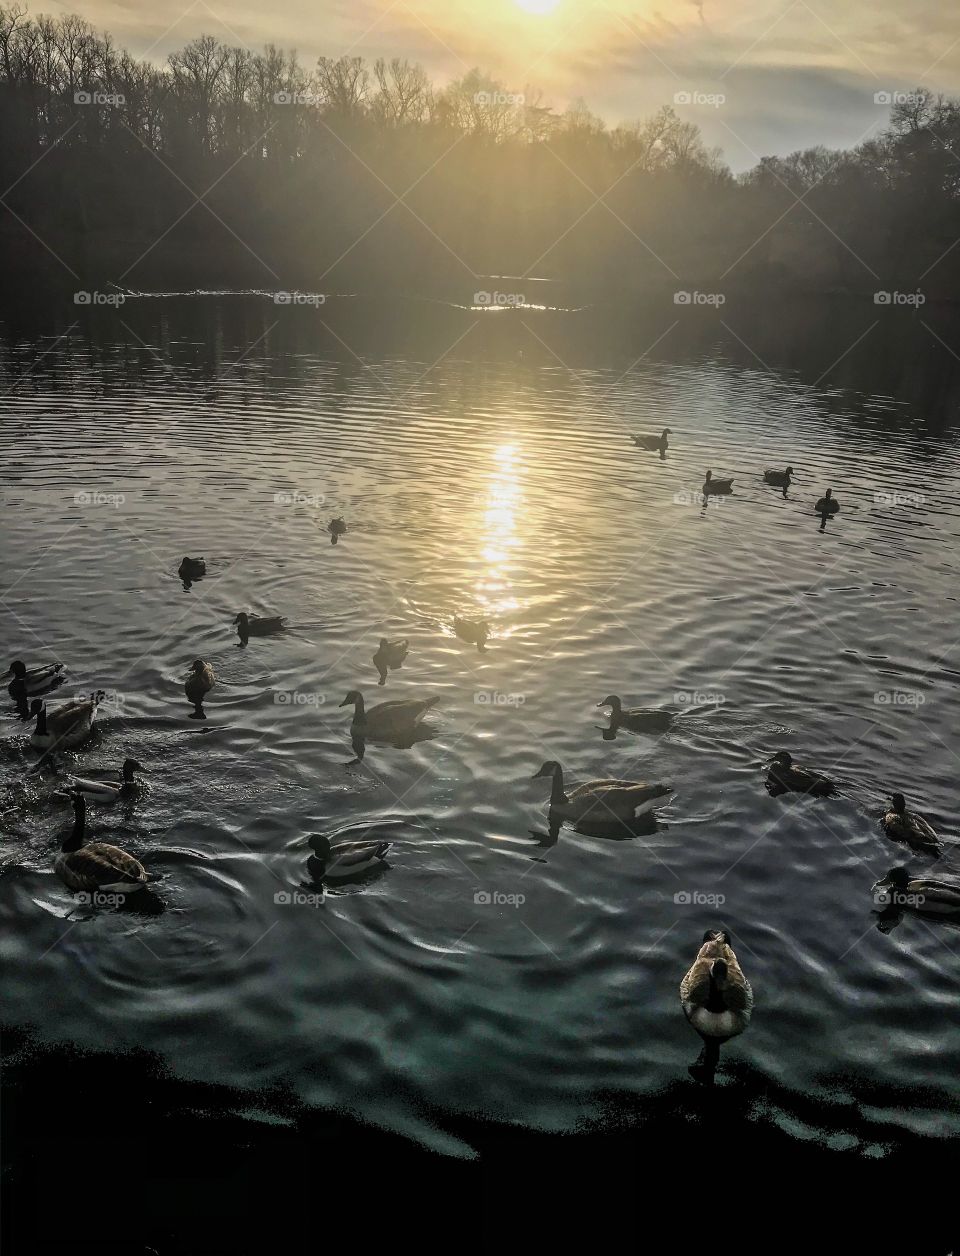 Canadian geese enjoying the lake